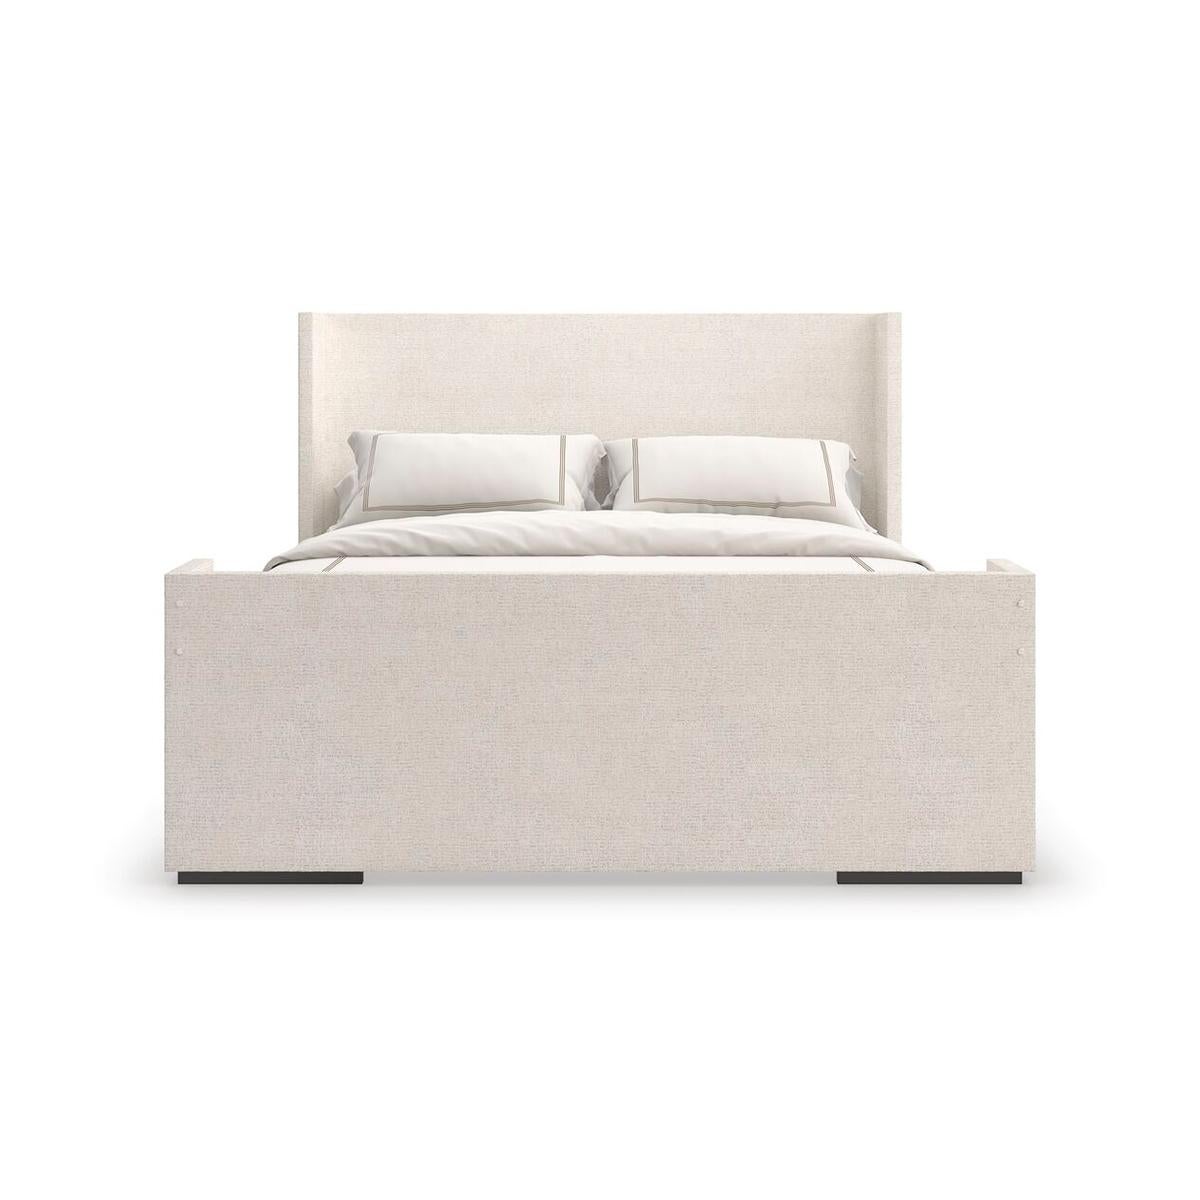 Das mit einem weichen Chenille-Stoff bezogene Bett strahlt mühelose Eleganz und einhüllenden Komfort aus. Die schlichte, geometrische Form und der beruhigende, neutrale Farbton passen hervorragend zu klassischer oder moderner Designästhetik.

Er